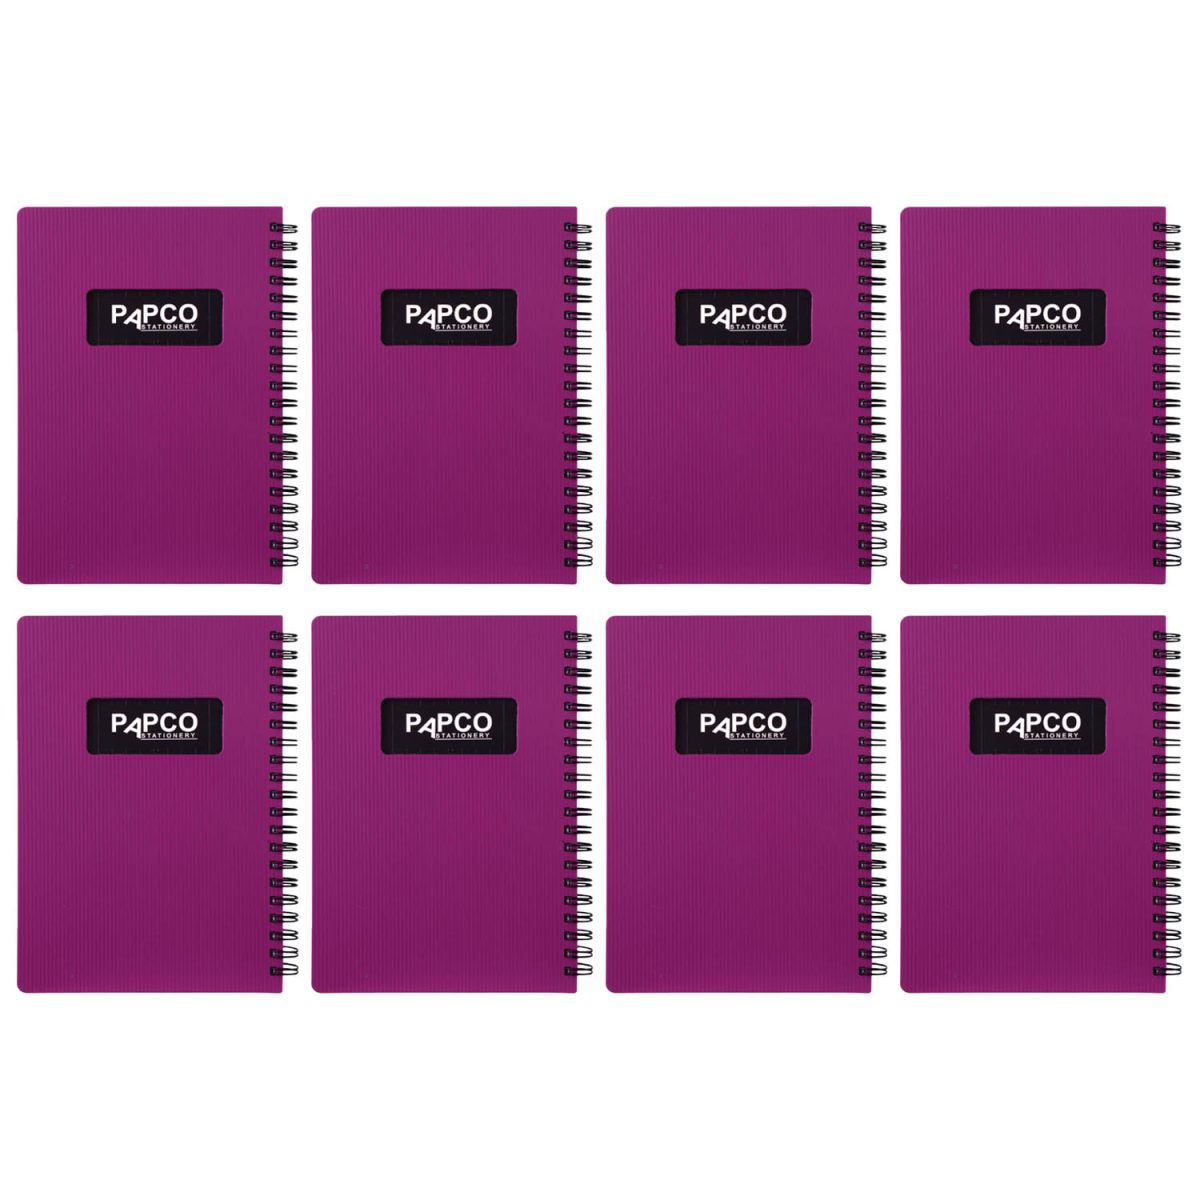 دفتر یادداشت پاپکو مدل 647 بسته 8 عددی